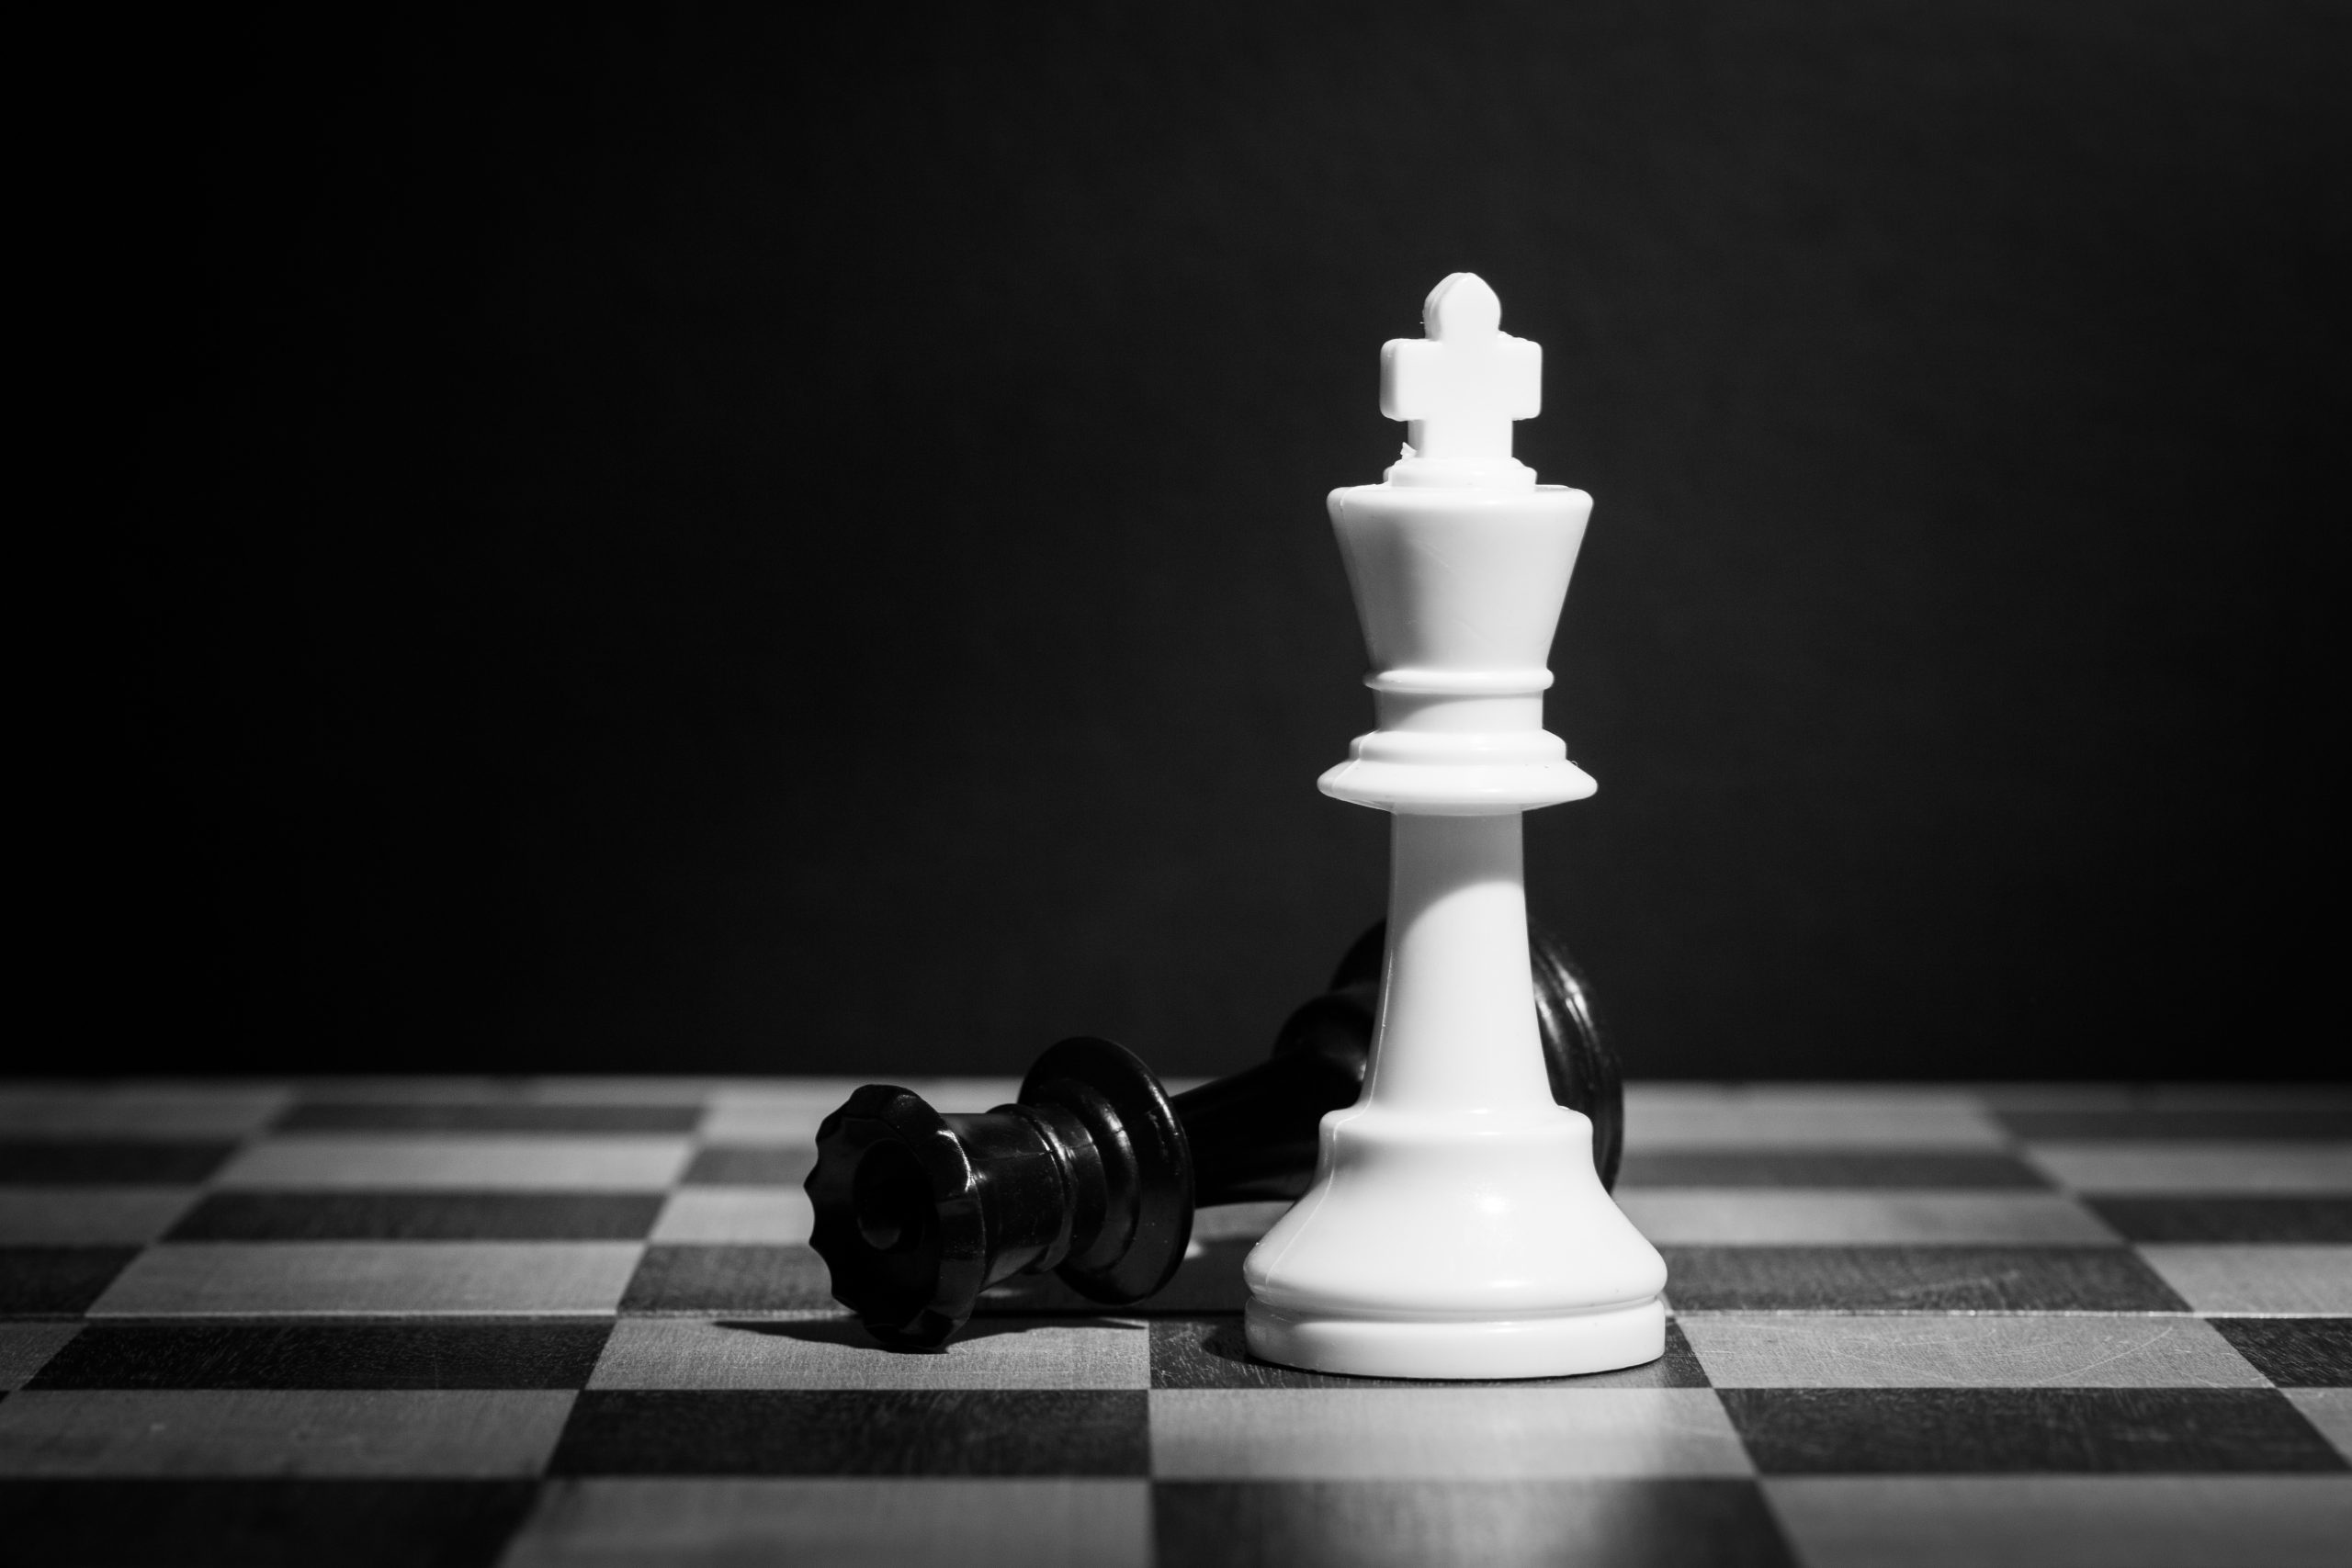 Millionen-Schummel bei Chess möglich ZDNet.de